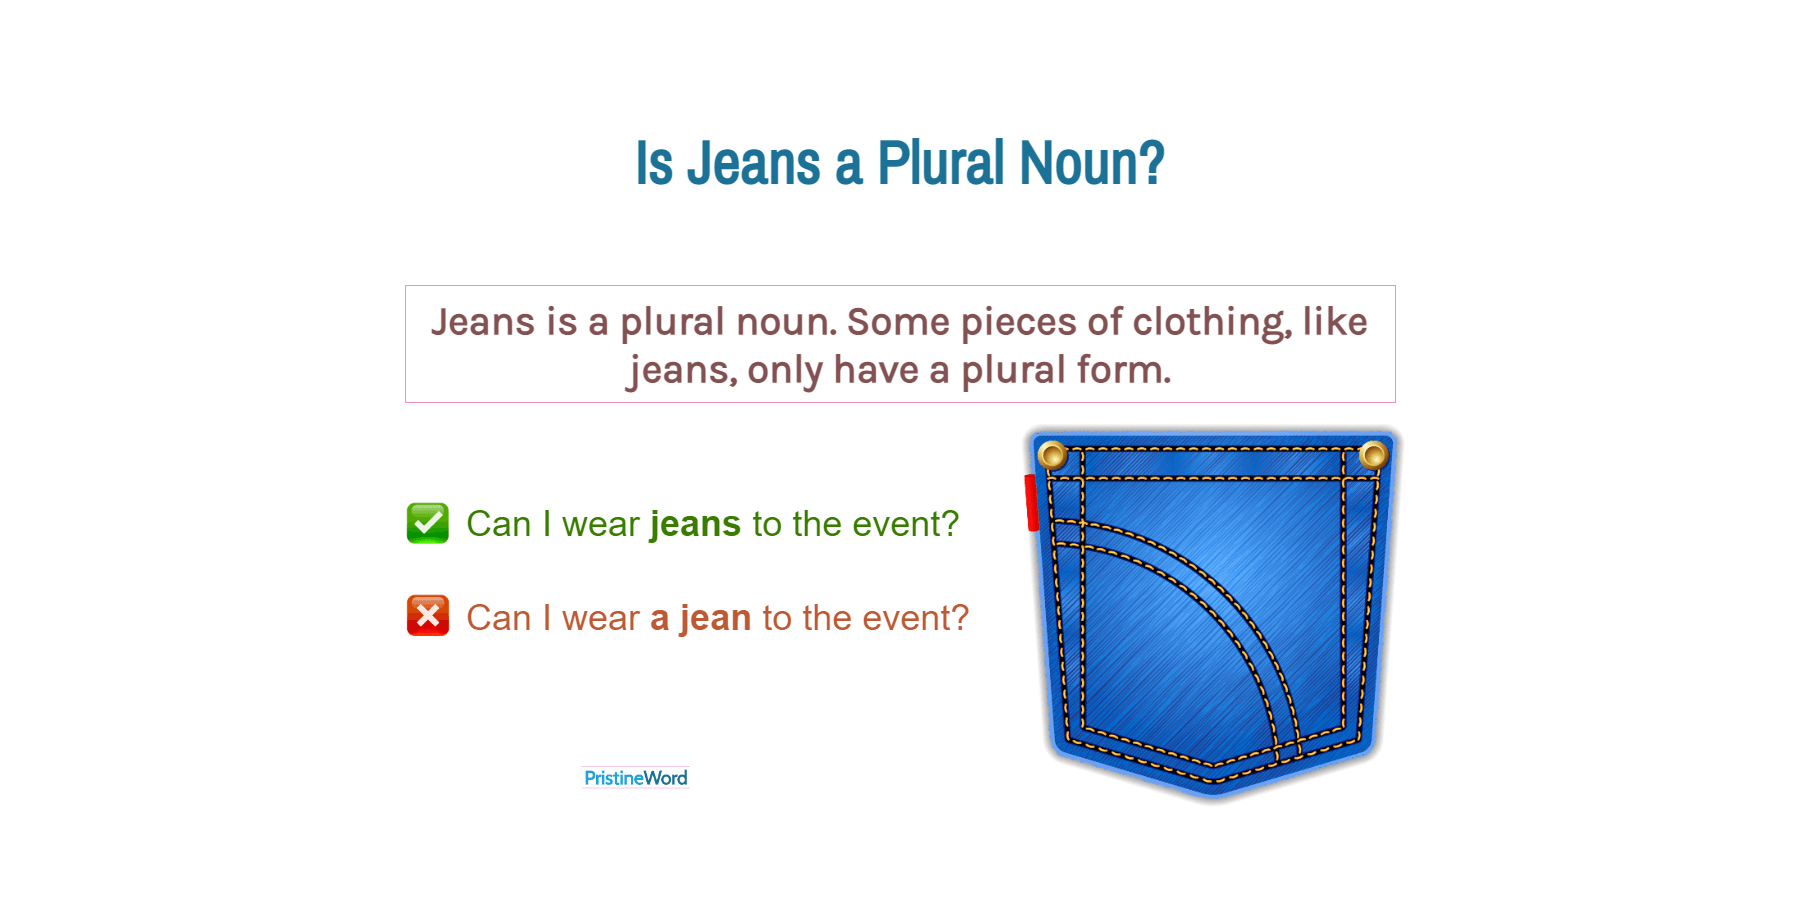 Is Jeans a Plural Noun?